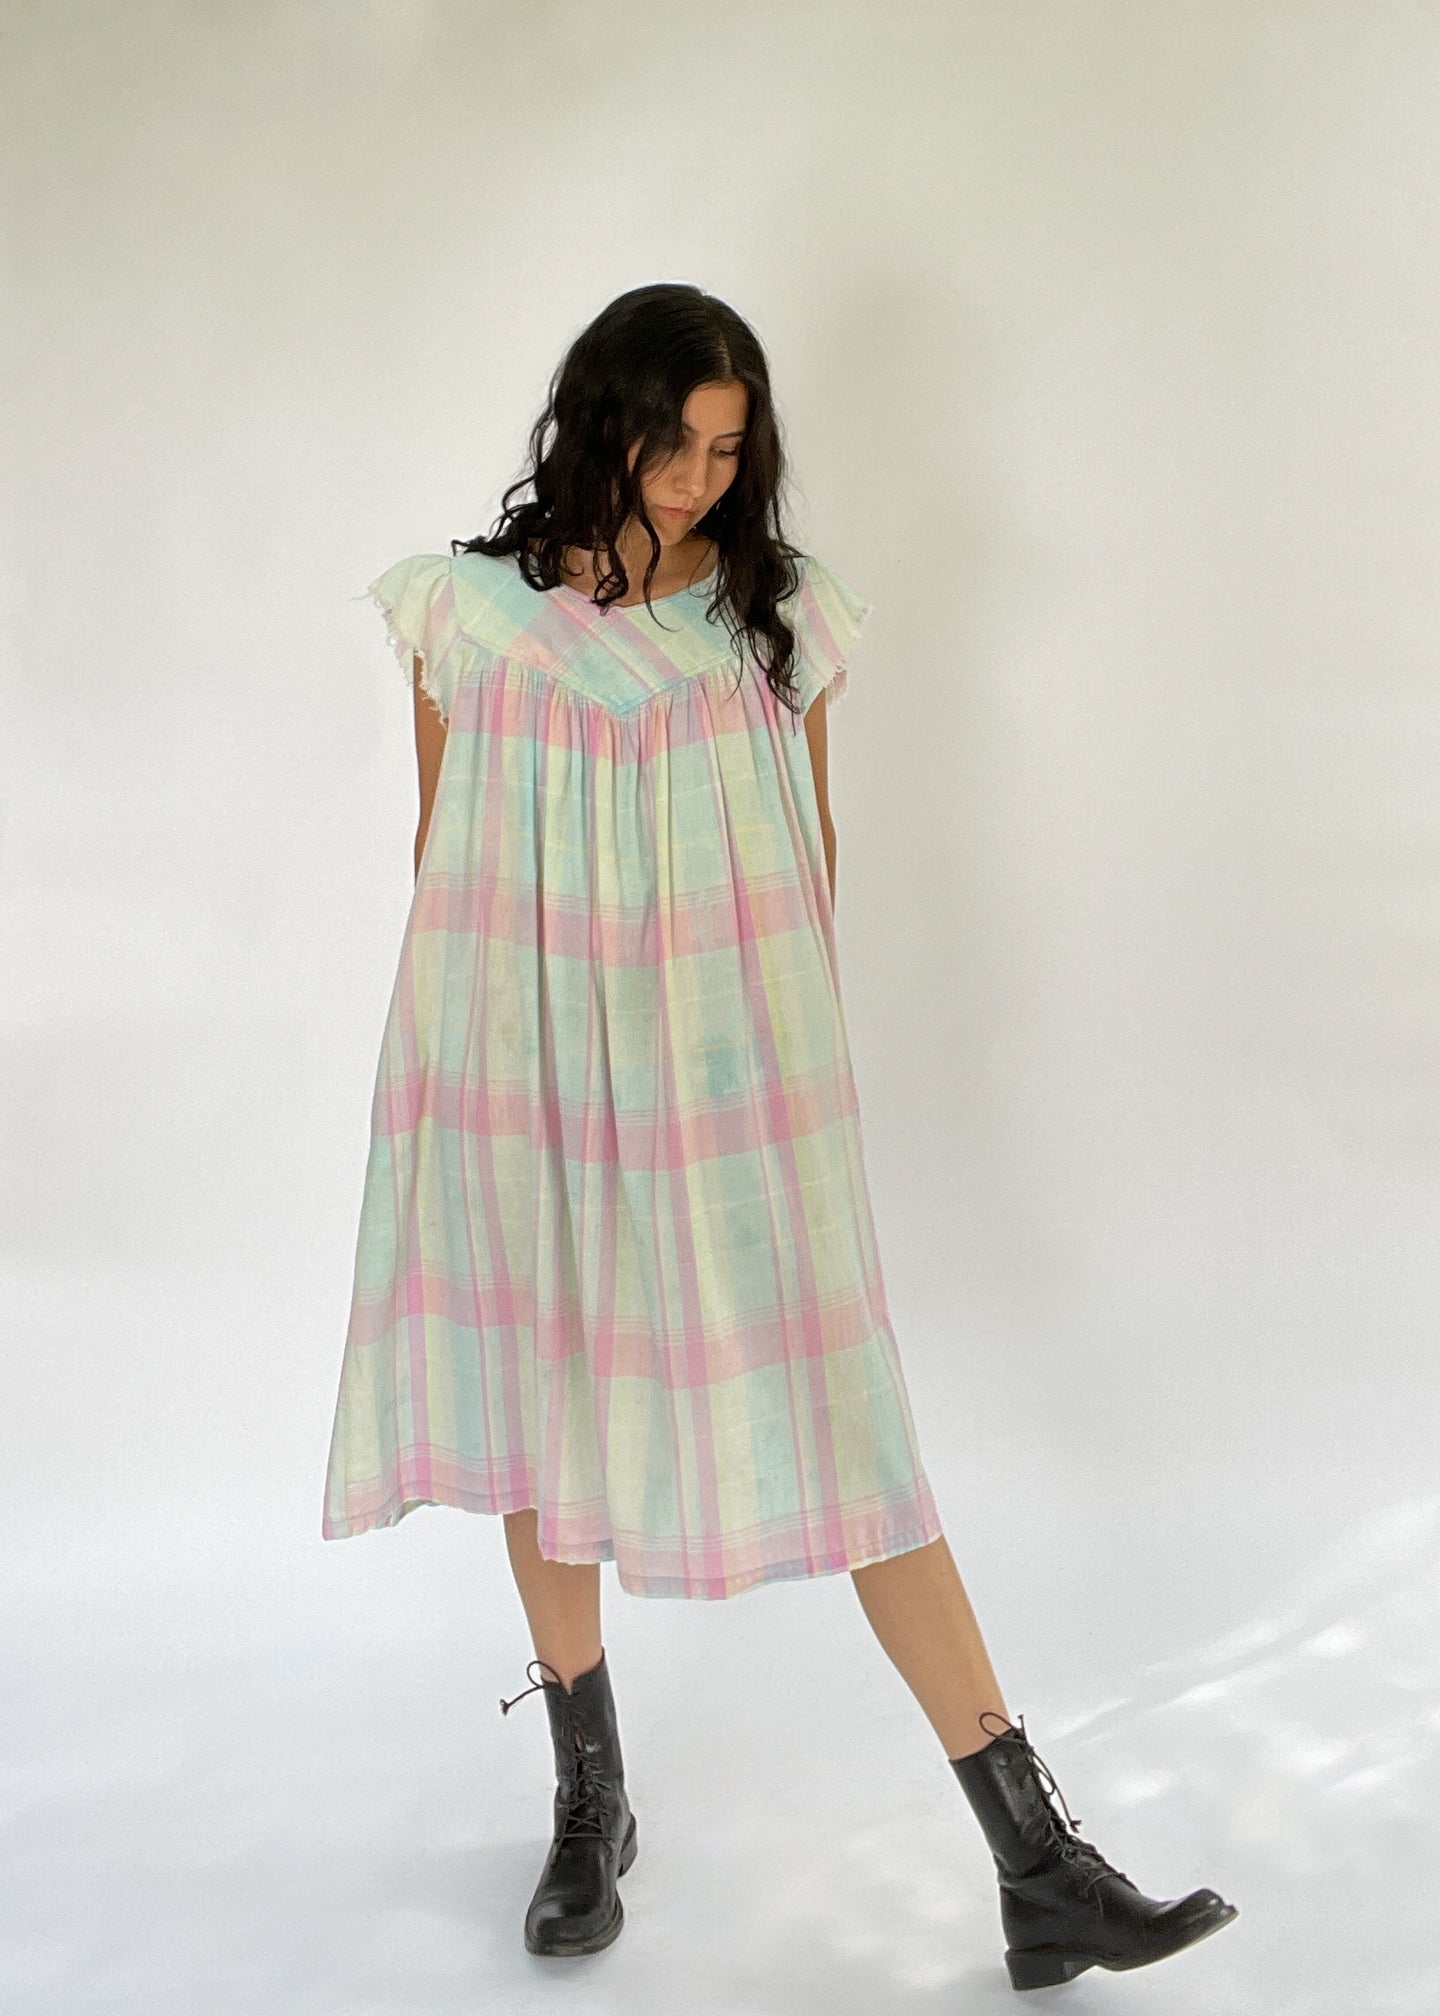 Vintage Pastel Plaid Cotton Dress | XS - L